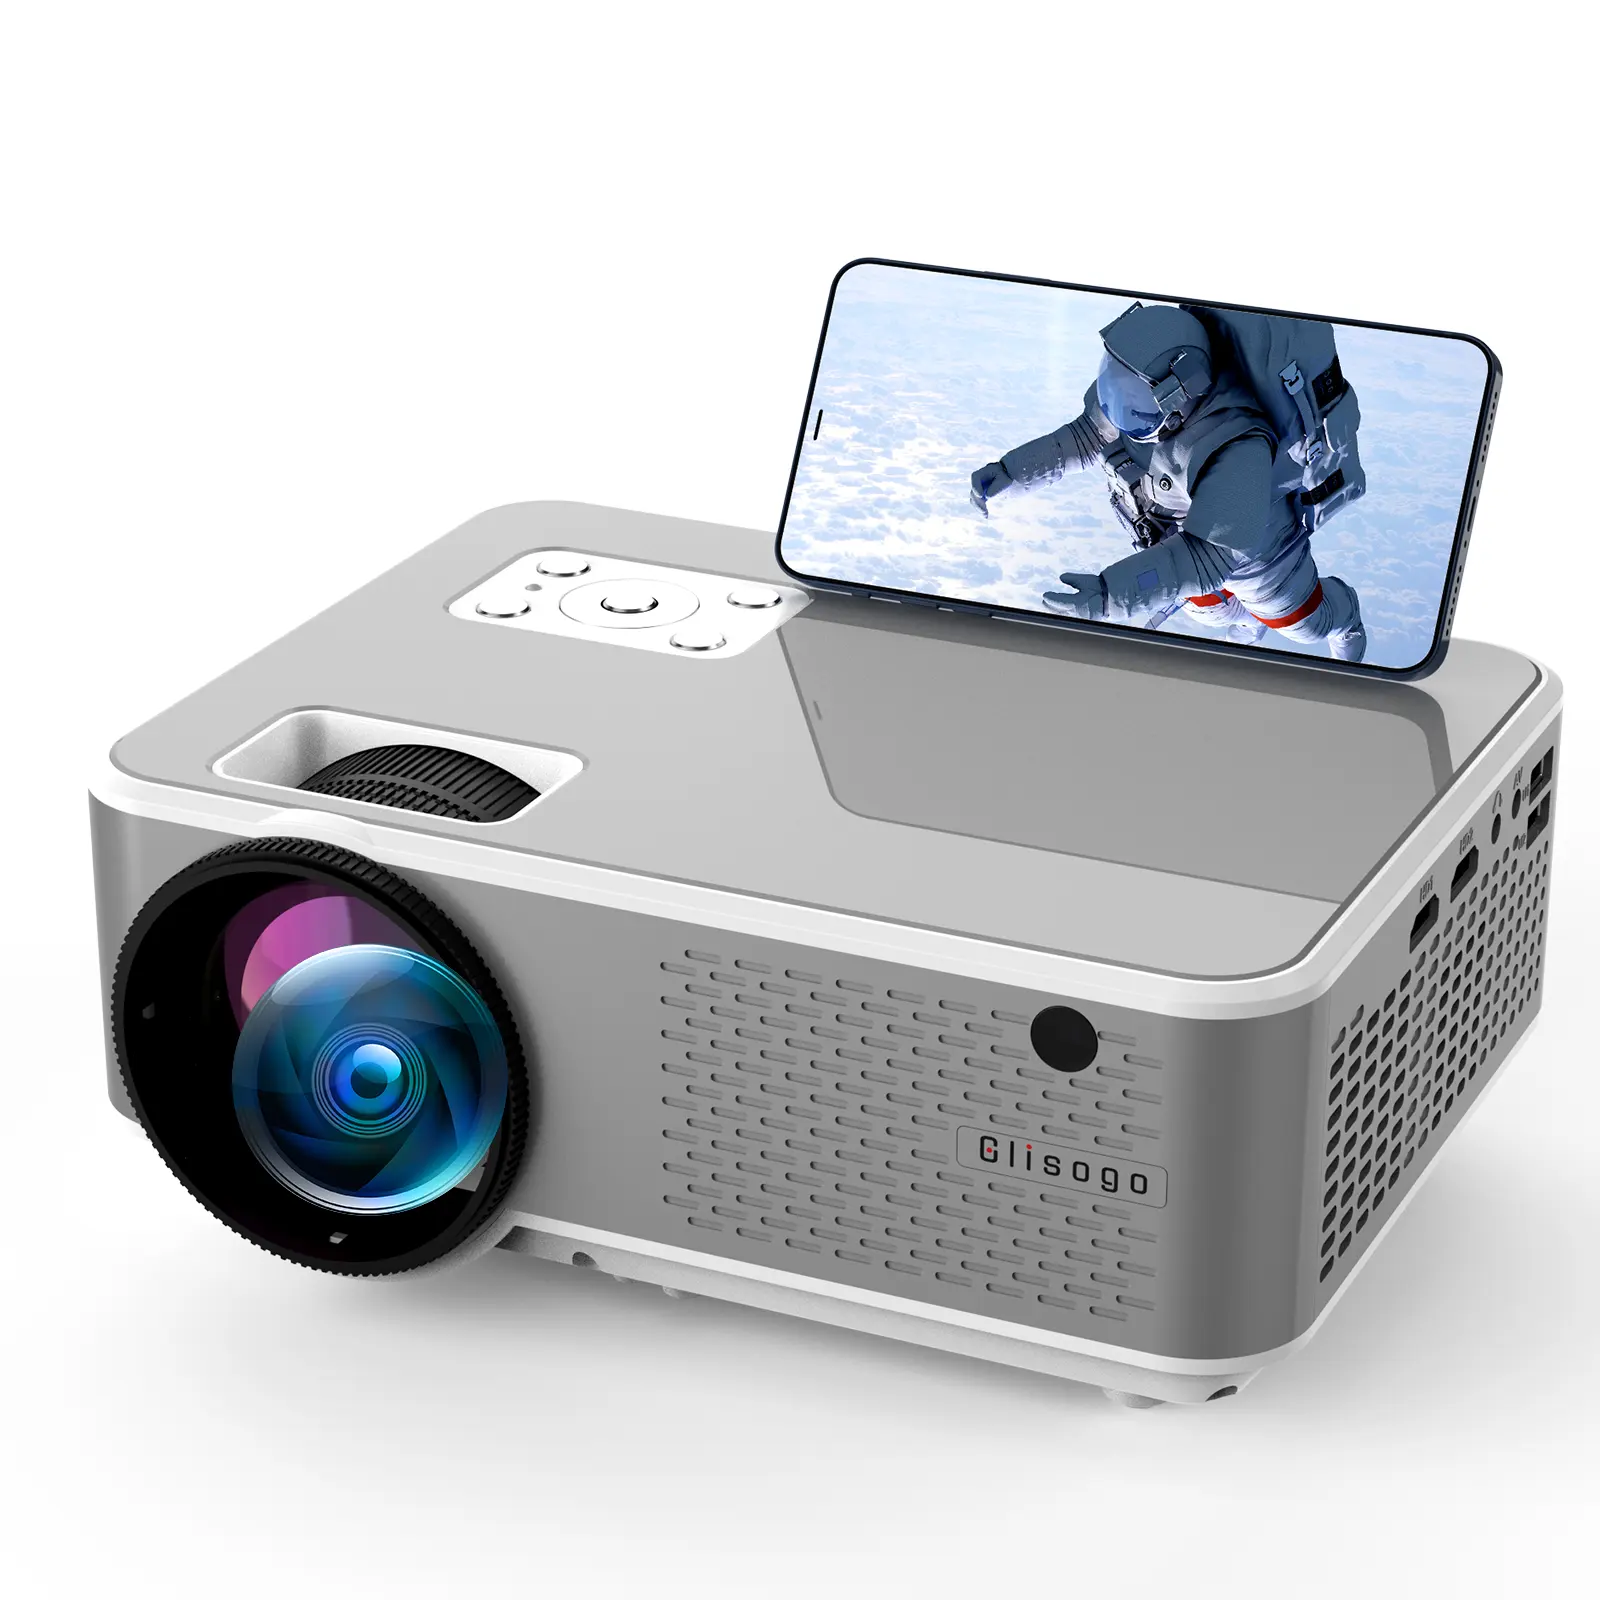 Proyector de iluminación de vídeo Ultra corto, pantalla Lcd, miniproyector de luz nocturna inteligente